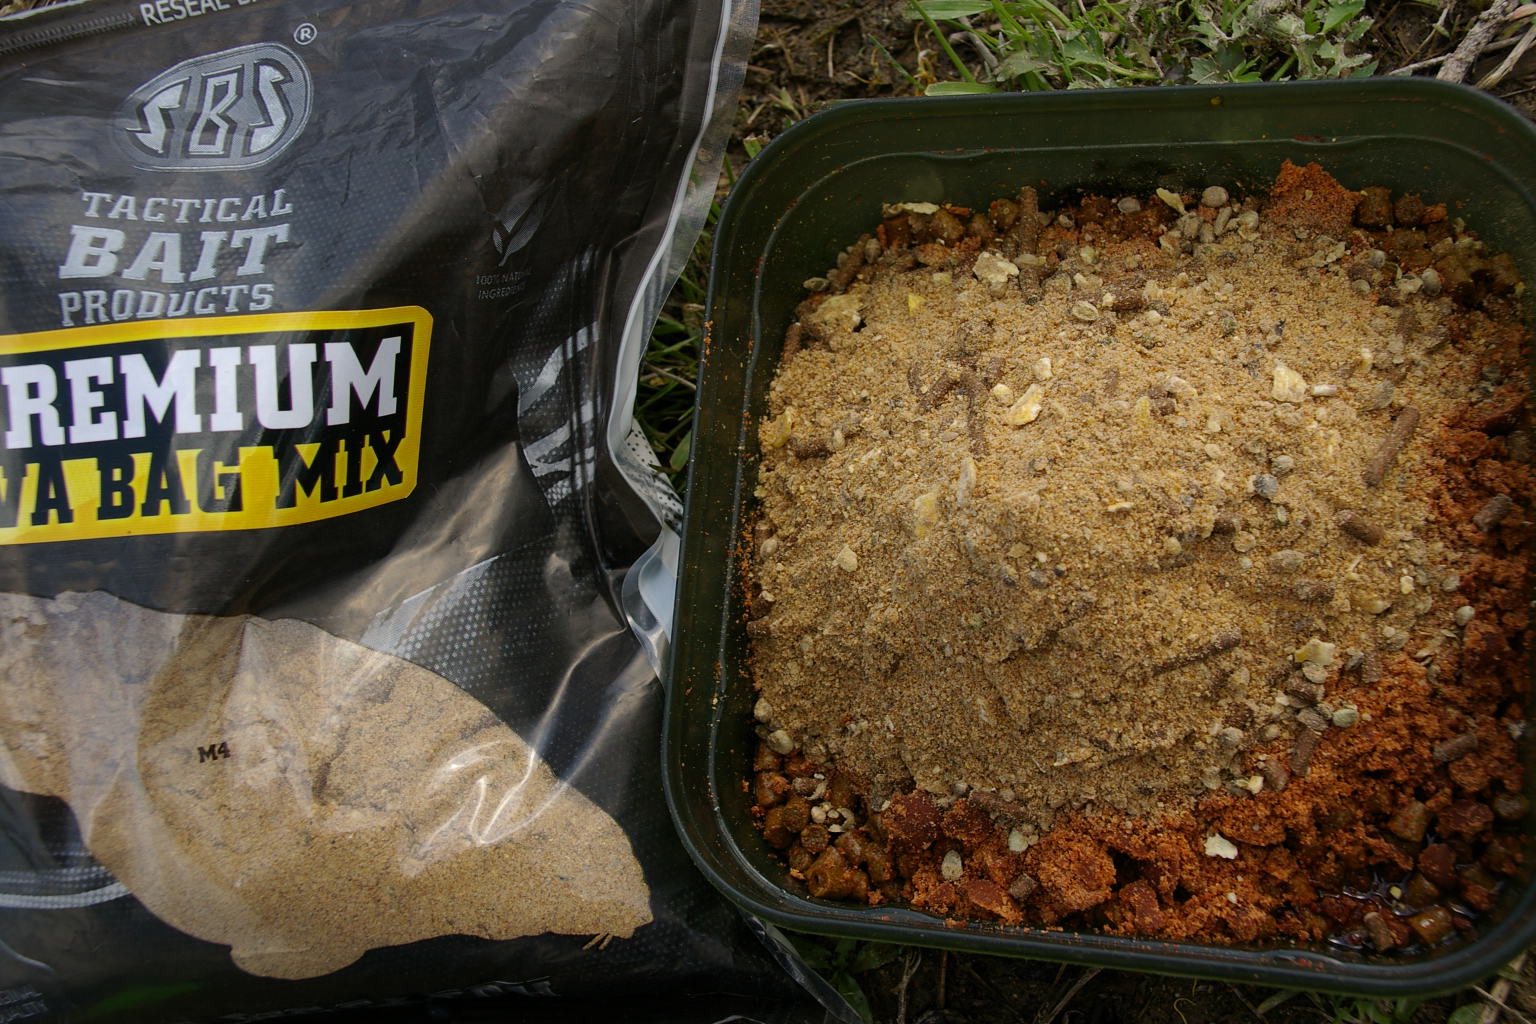 Premium PVA bag mix, con copos de maíz y pellets de CSL